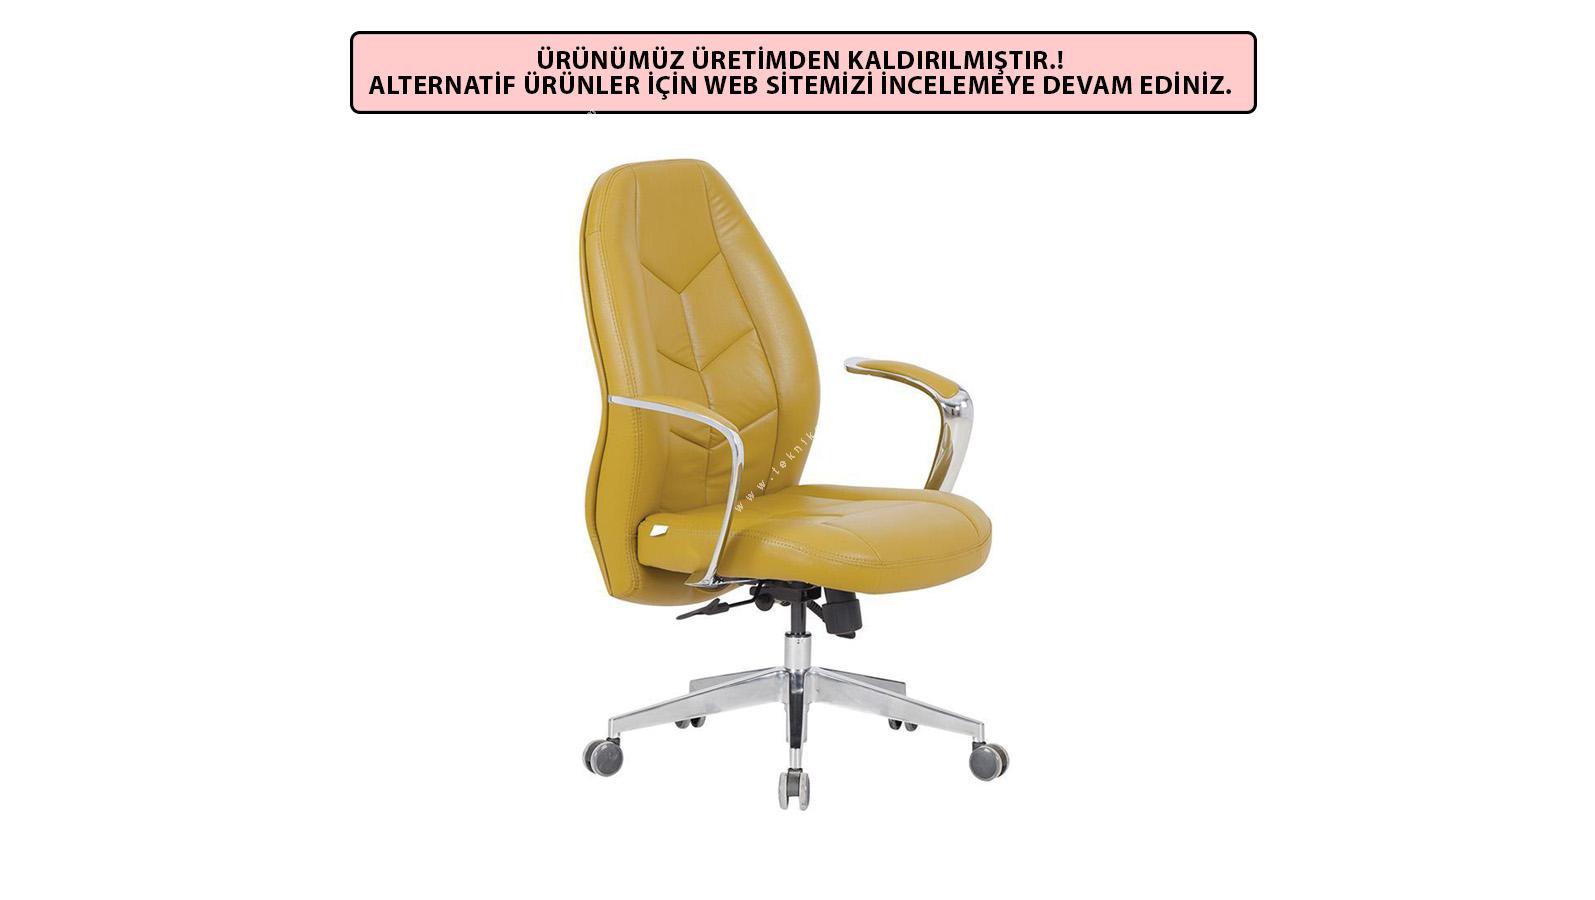 coloured alüminyum tasarım toplantı koltuğu